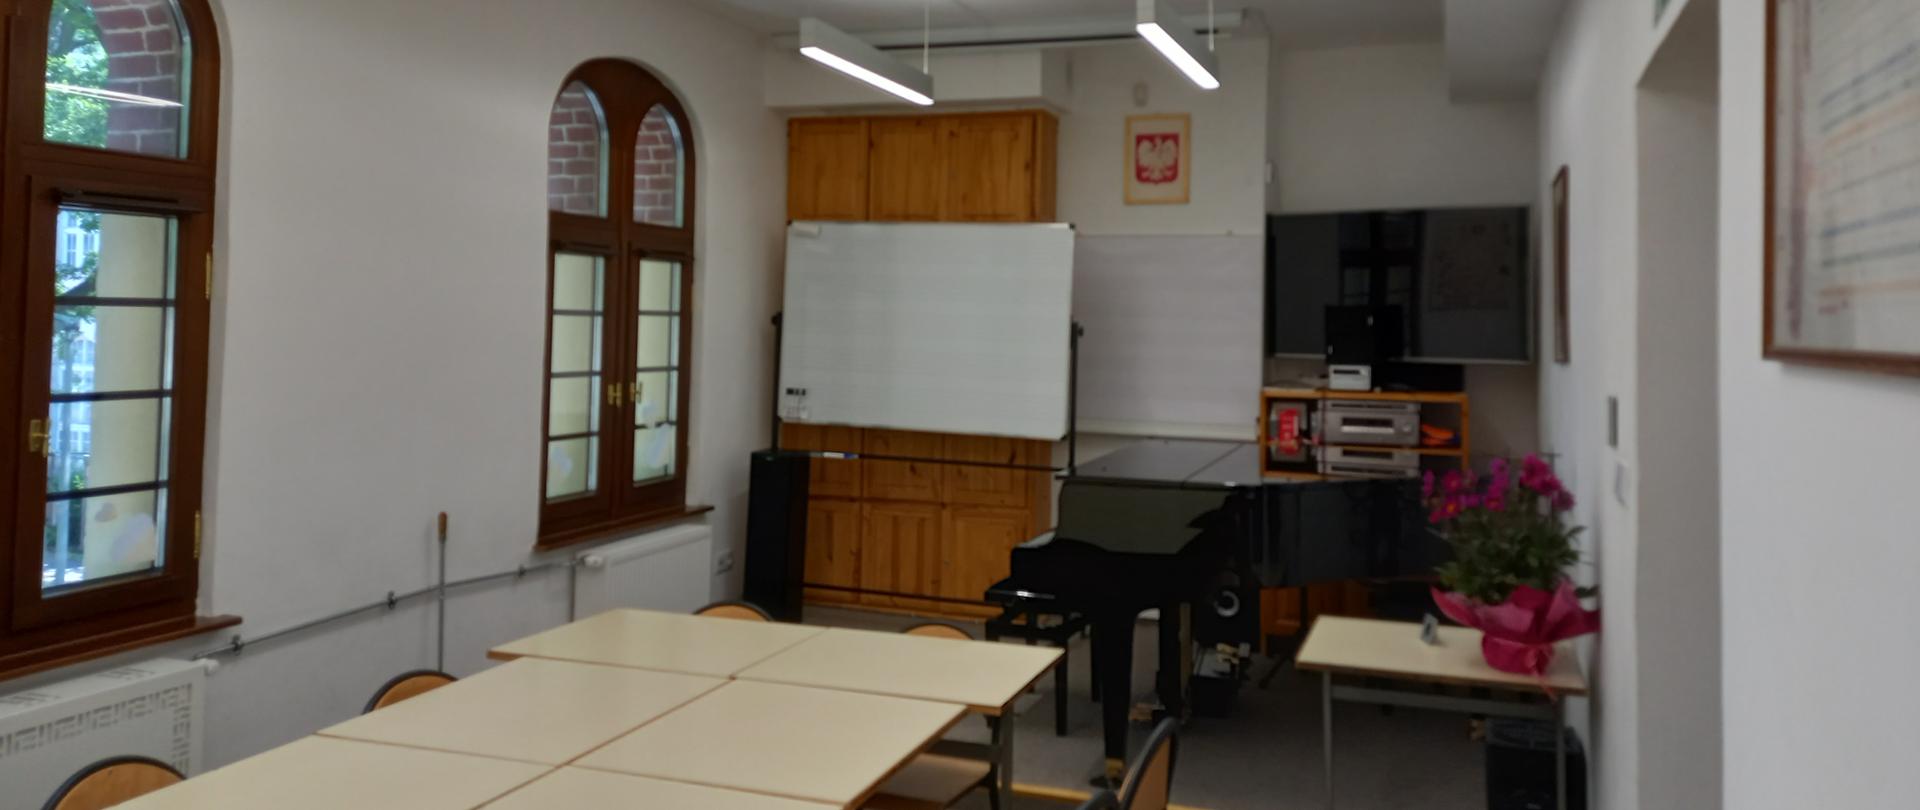 Zdjęcie przedstawiające salę w szkole muzycznej, białe ściany, po lewej stronie dwa łukowe okna, po prawej stronie drzwi, w głębi mała scena, na której stoi tablica szkolna po lewej stronie i po prawej stronie fortepian; nad fortepianem umieszczony jest telewizor, przed fortepianem kwiaty; środkiem klasy ustawiono stoły i krzesła